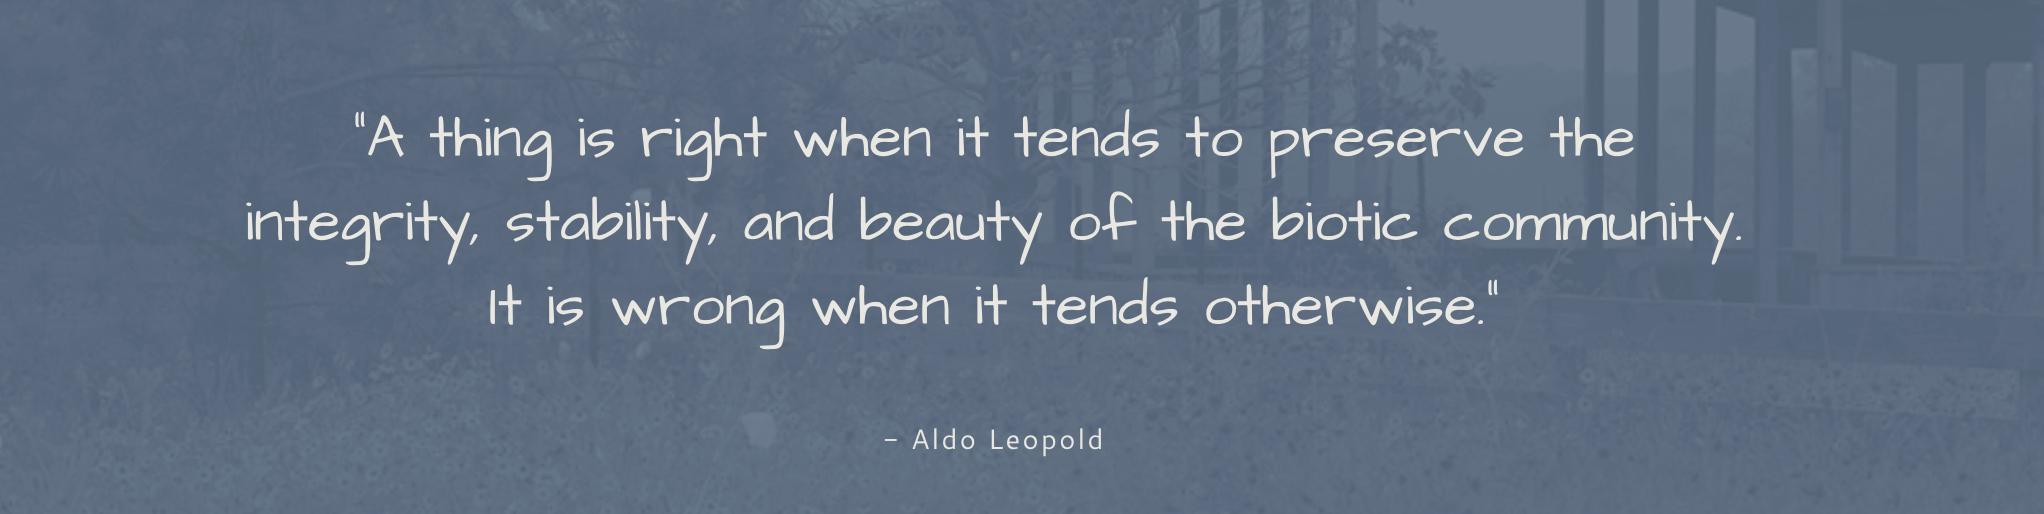 Aldo Leopold quote